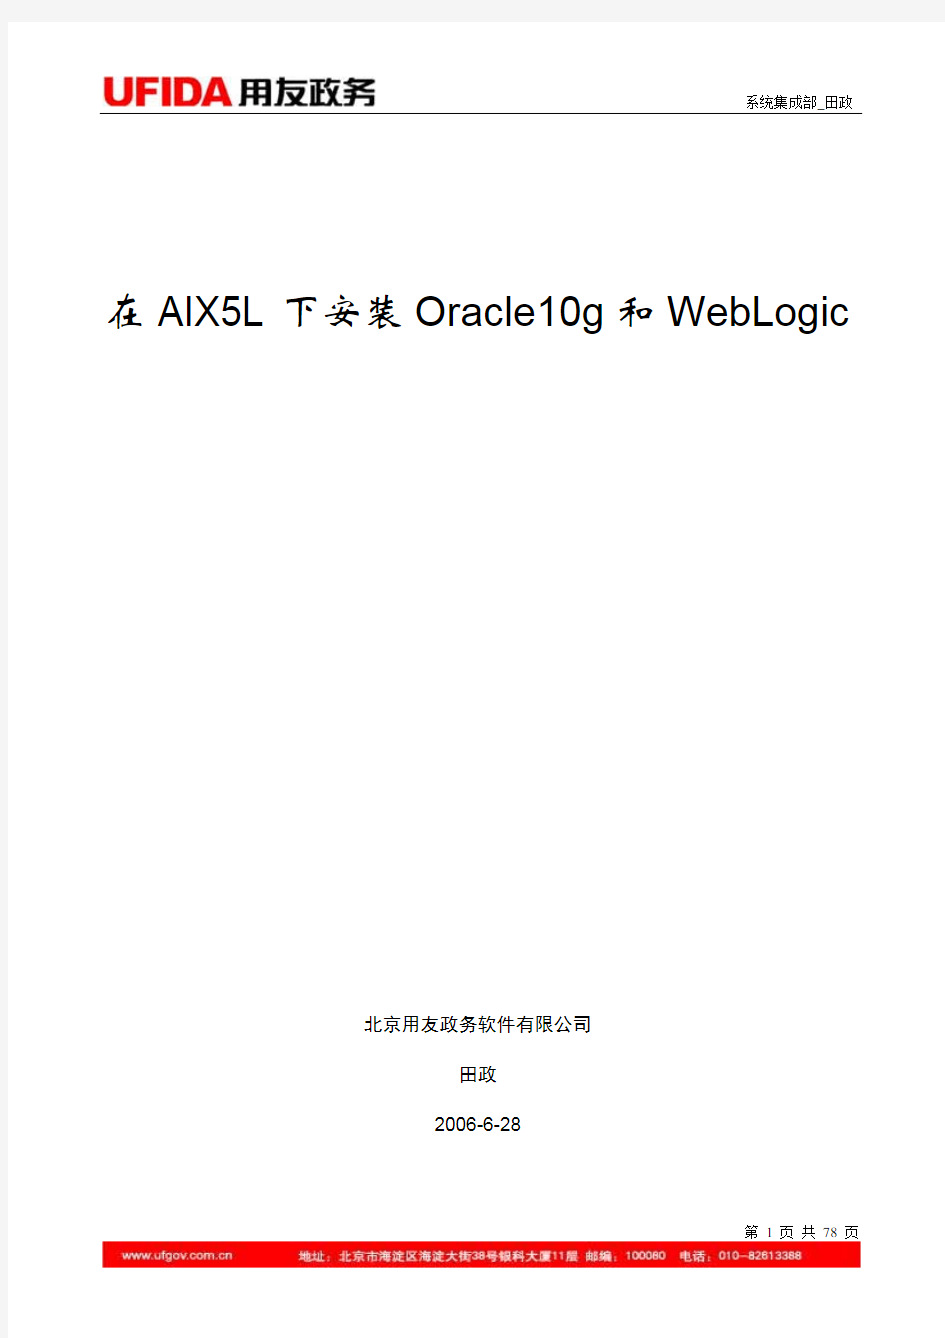 在AIX5L下安装Oracle10g和WebLogic